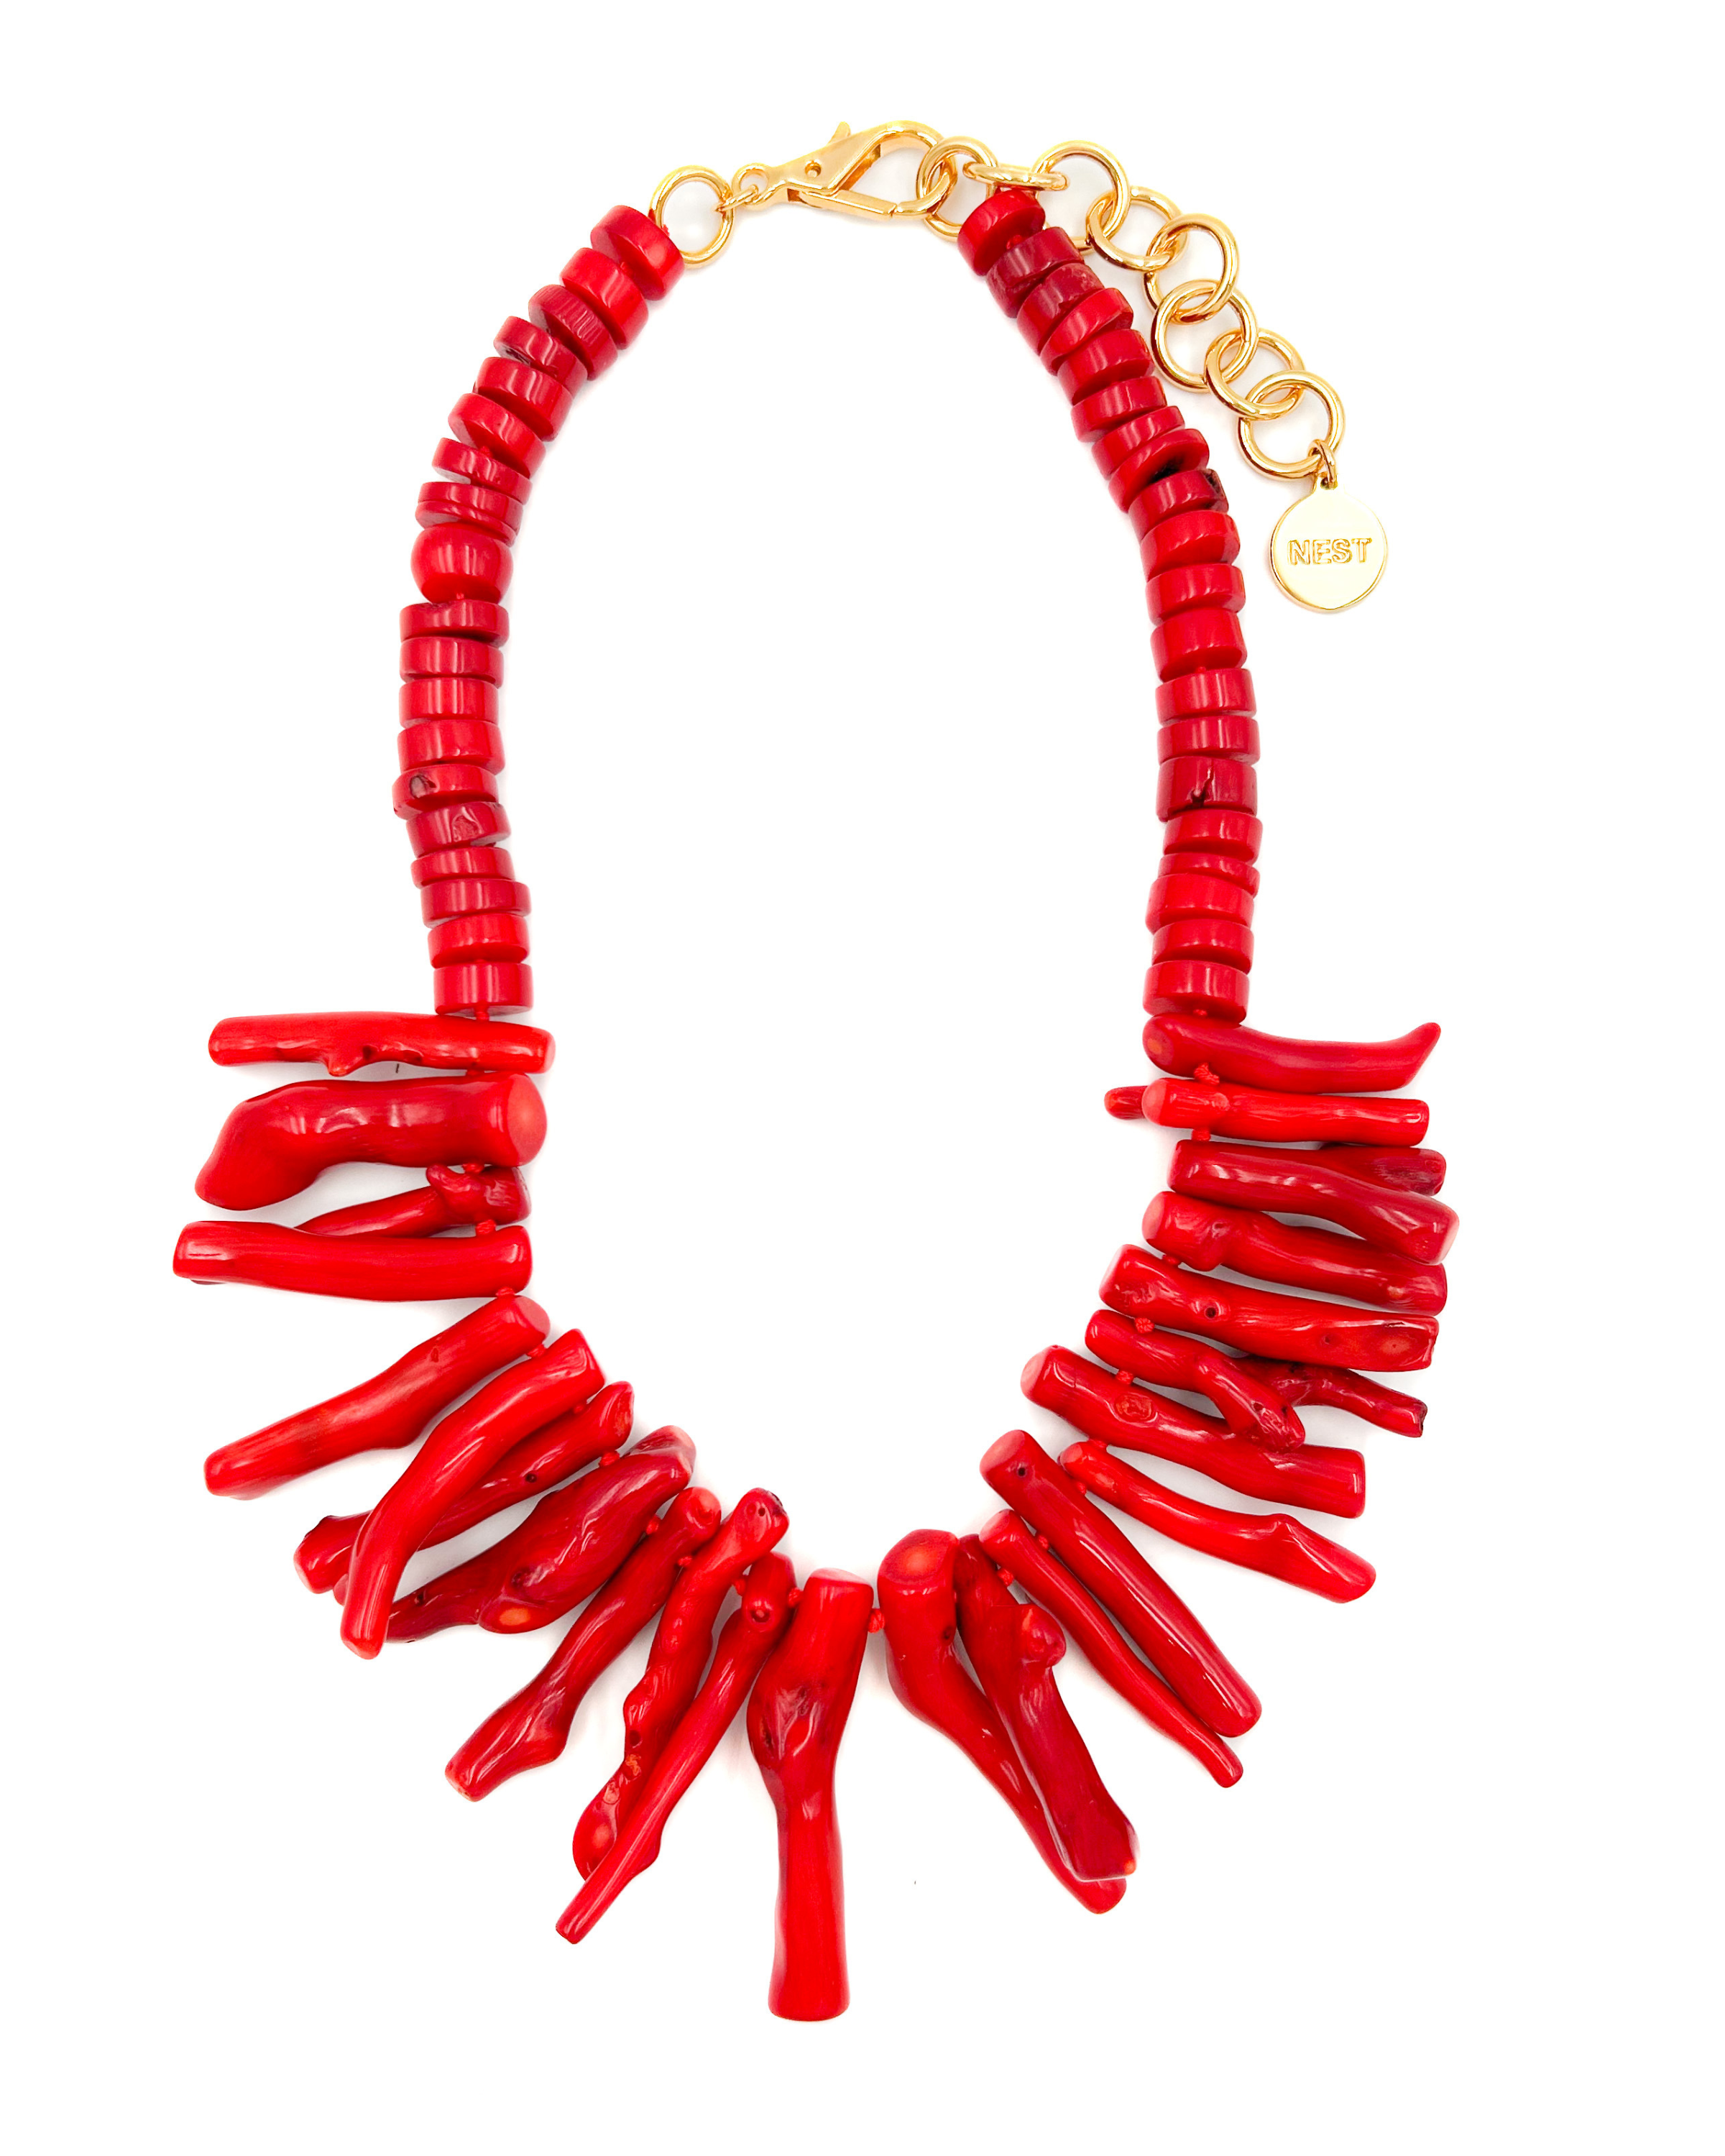 Red Coral Fringe Necklace